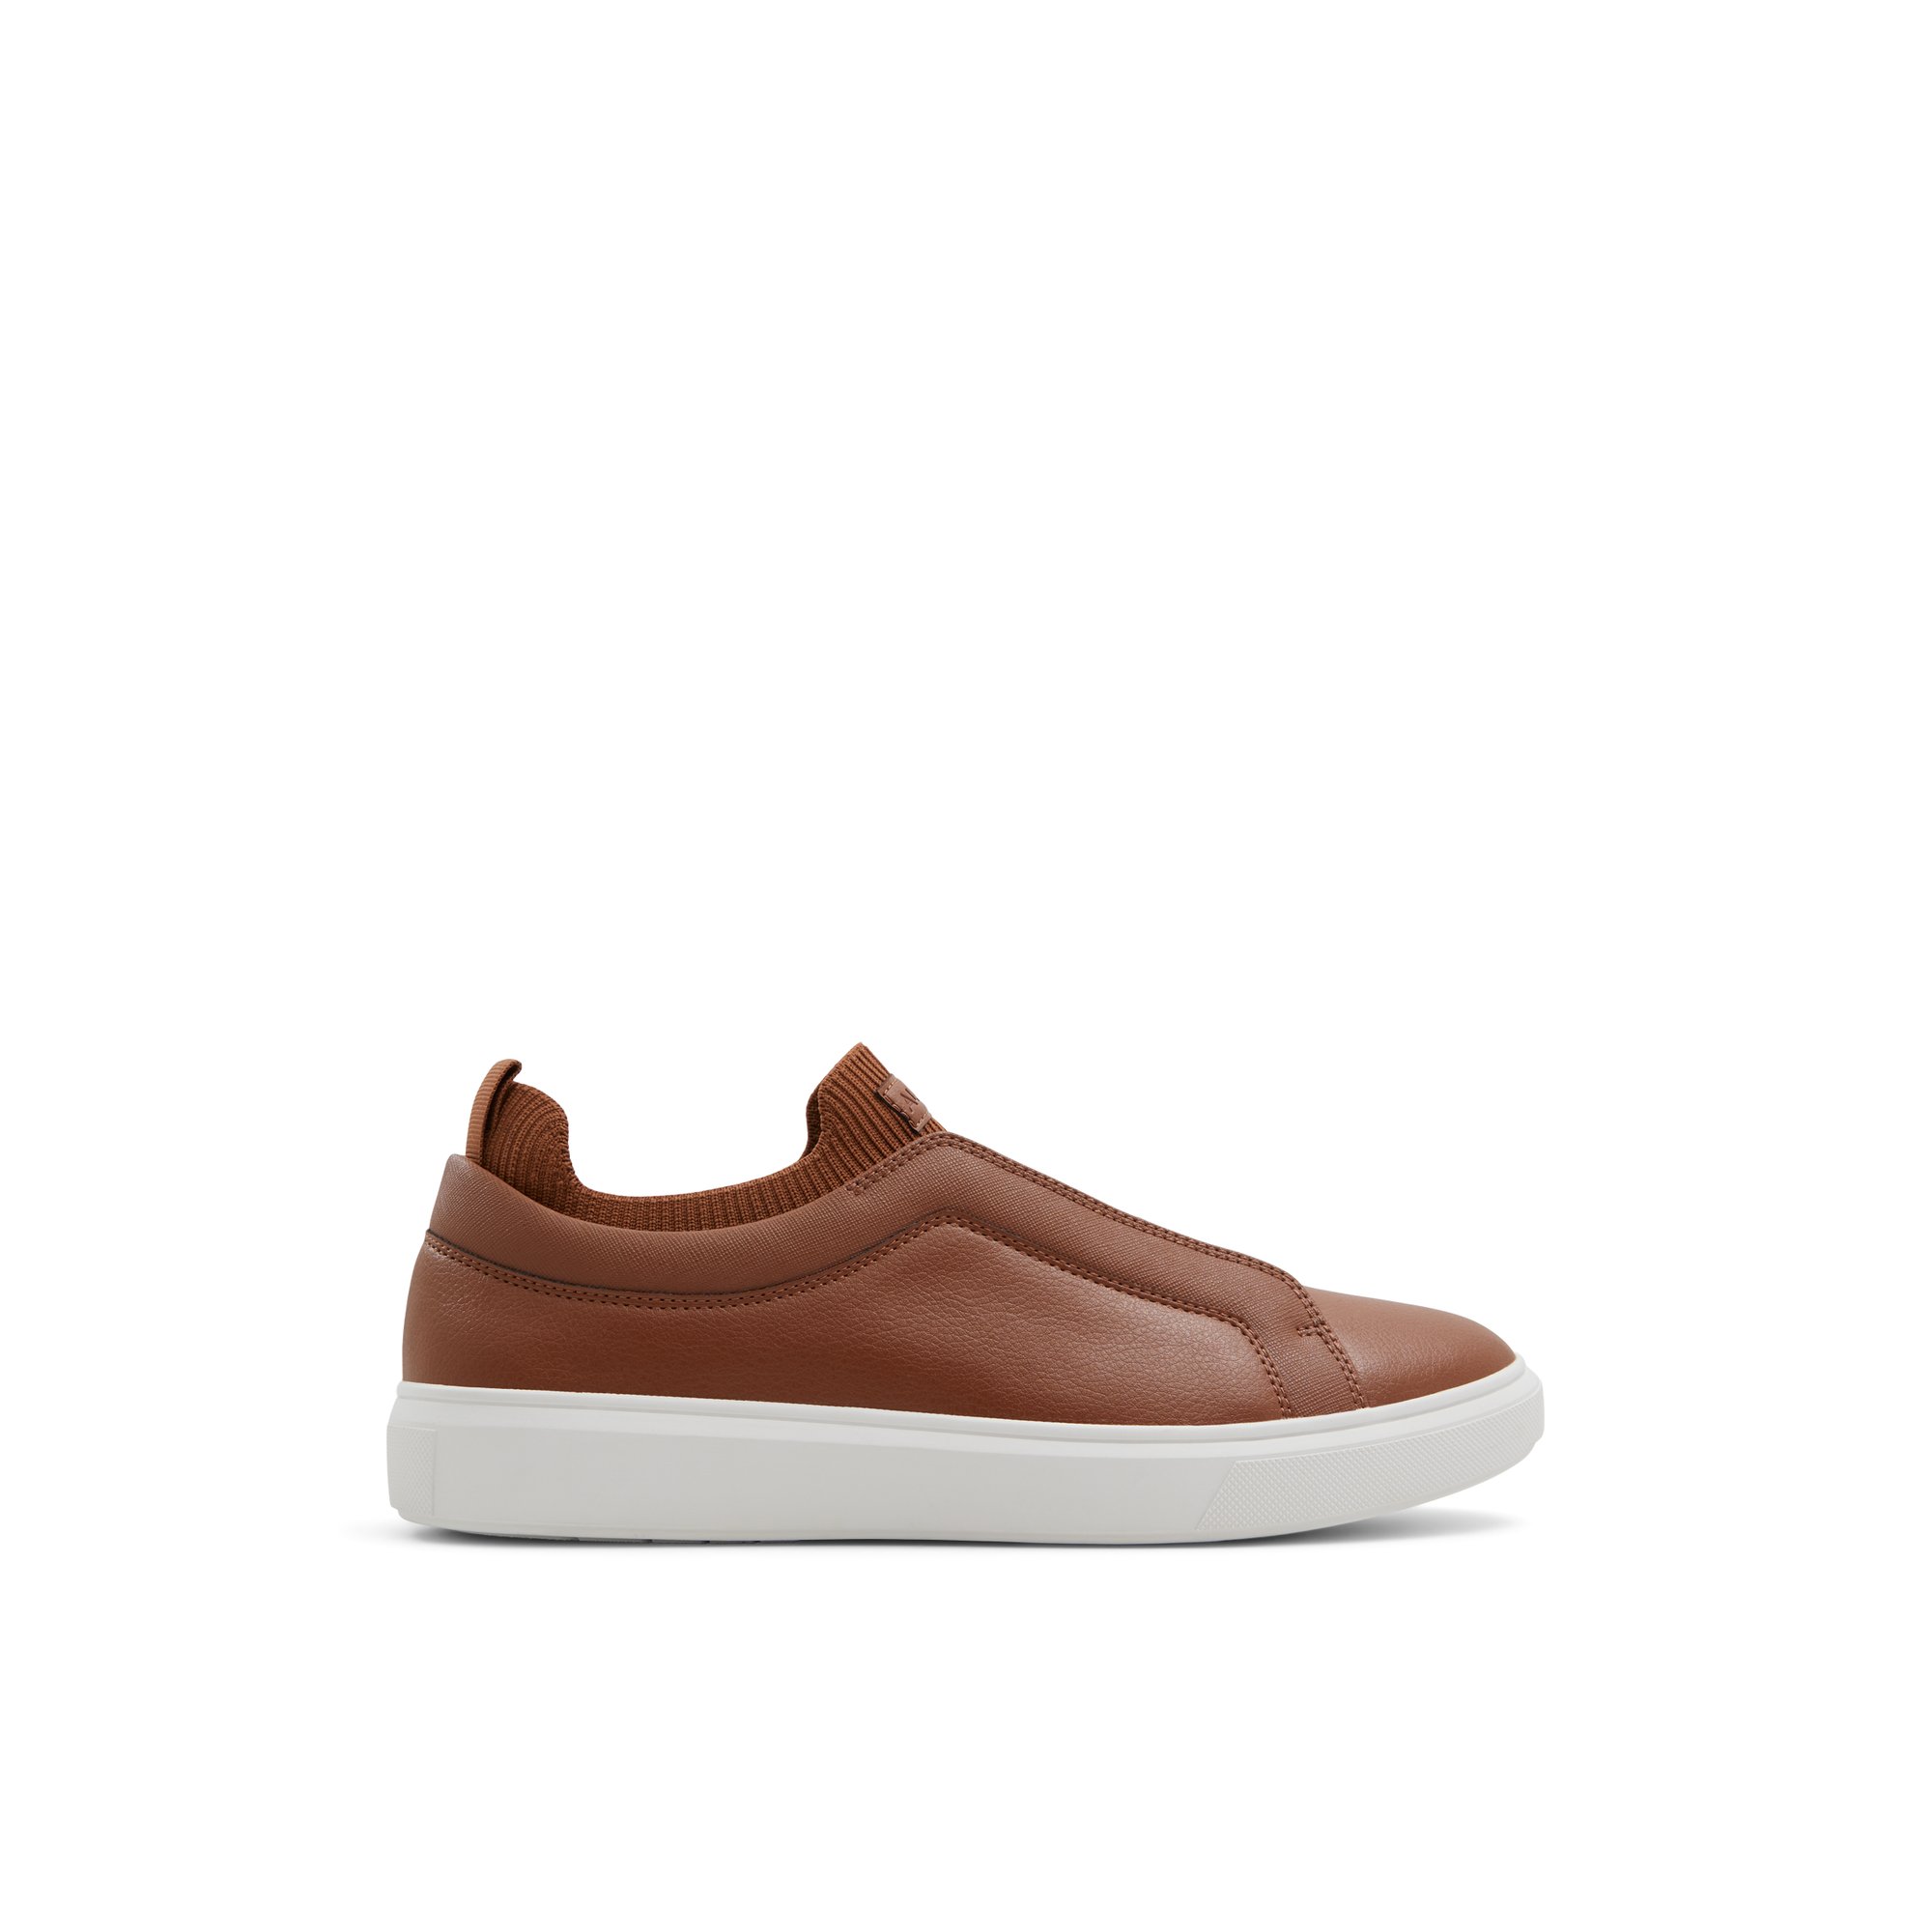 ALDO Midtown - Men's Sneakers Low Top - Brown